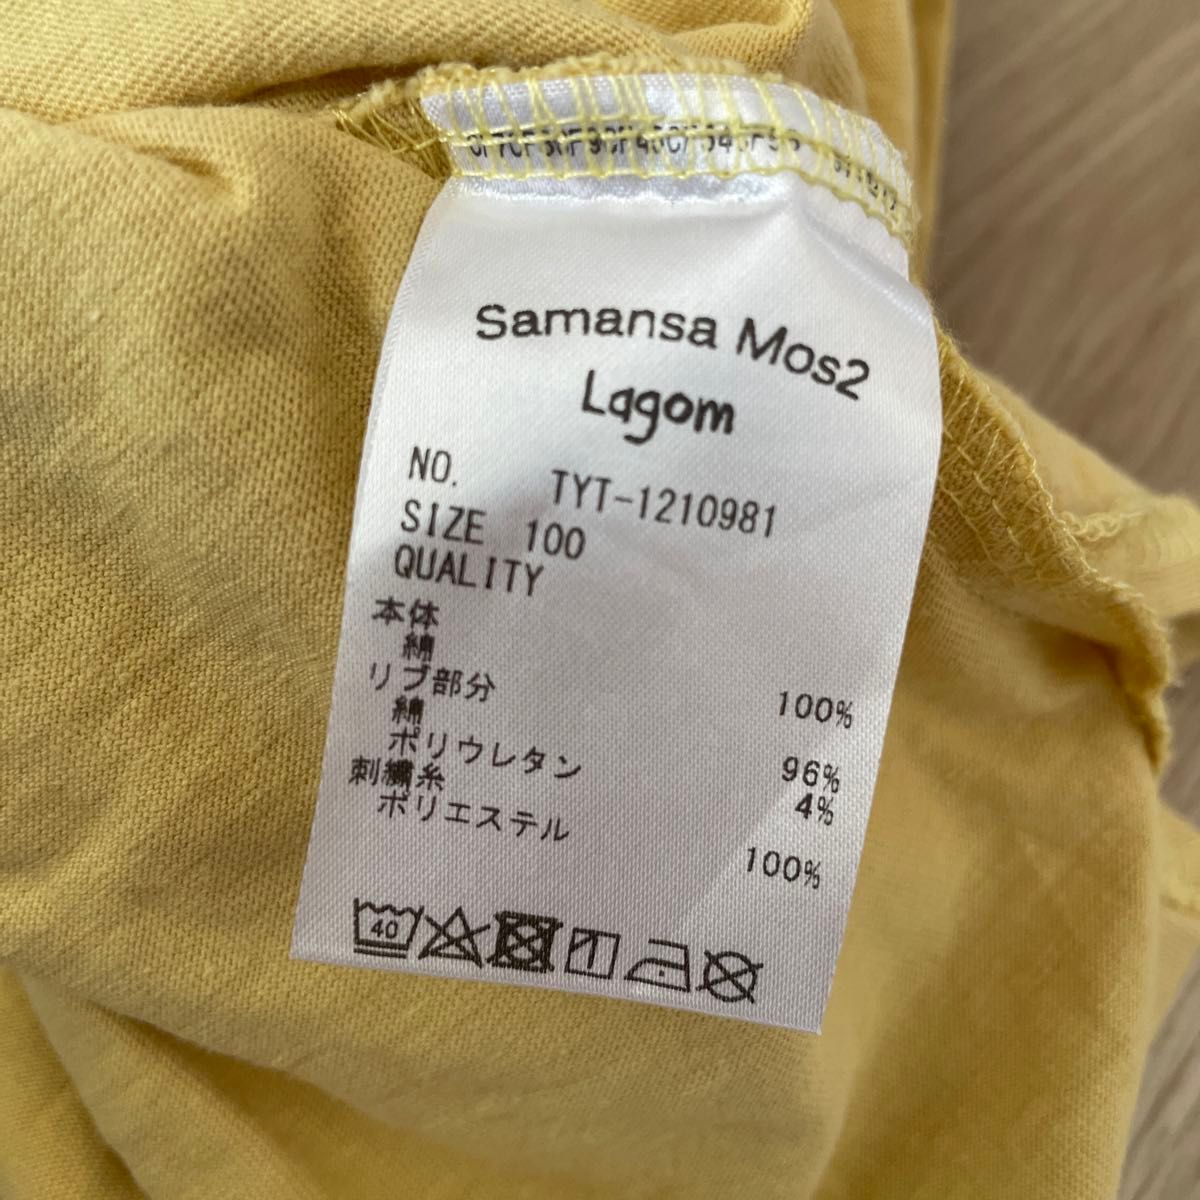 中古品☆samansa mos2 Lagom 動物 刺繍 リス Tシャツ 100cm 100サイズ